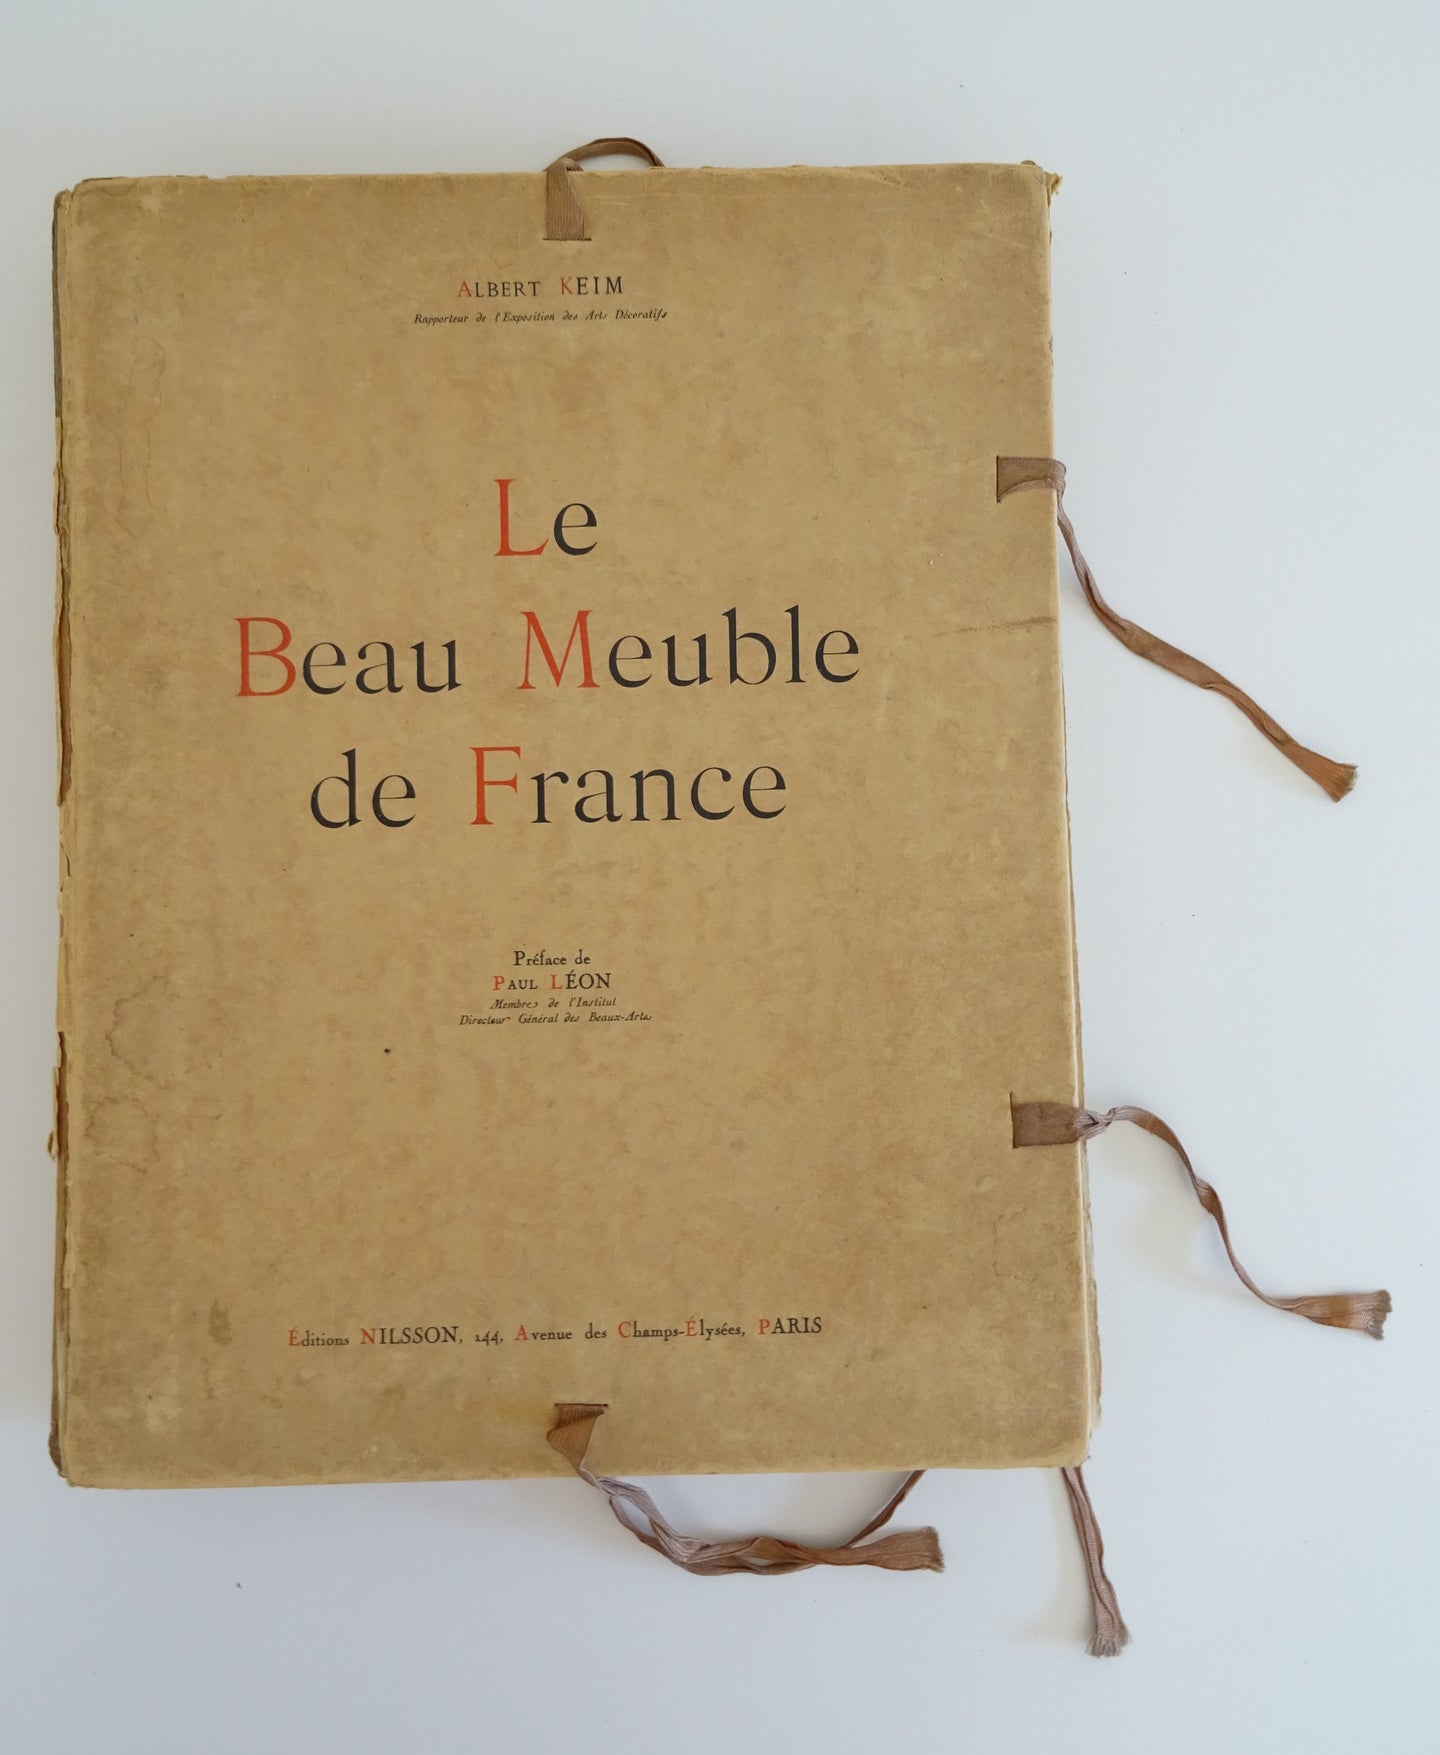 Le Beau meuble de France - Albert keim - paul Leon - Edt Nilsson, Paris